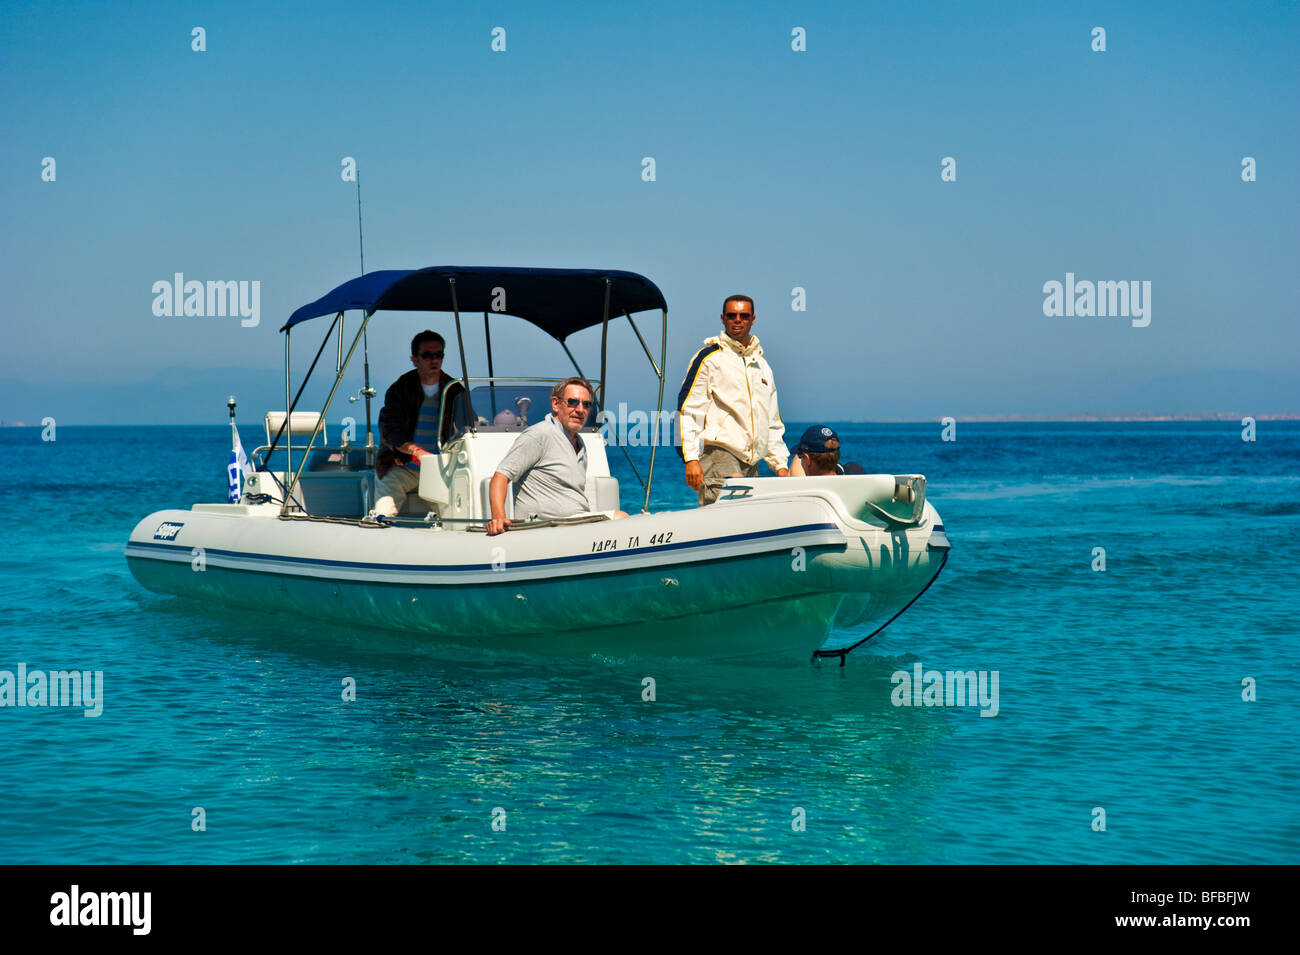 Trois hommes sur le bateau gonflable dans l'eau turquoise, le Golf Saronique, Grèce Banque D'Images